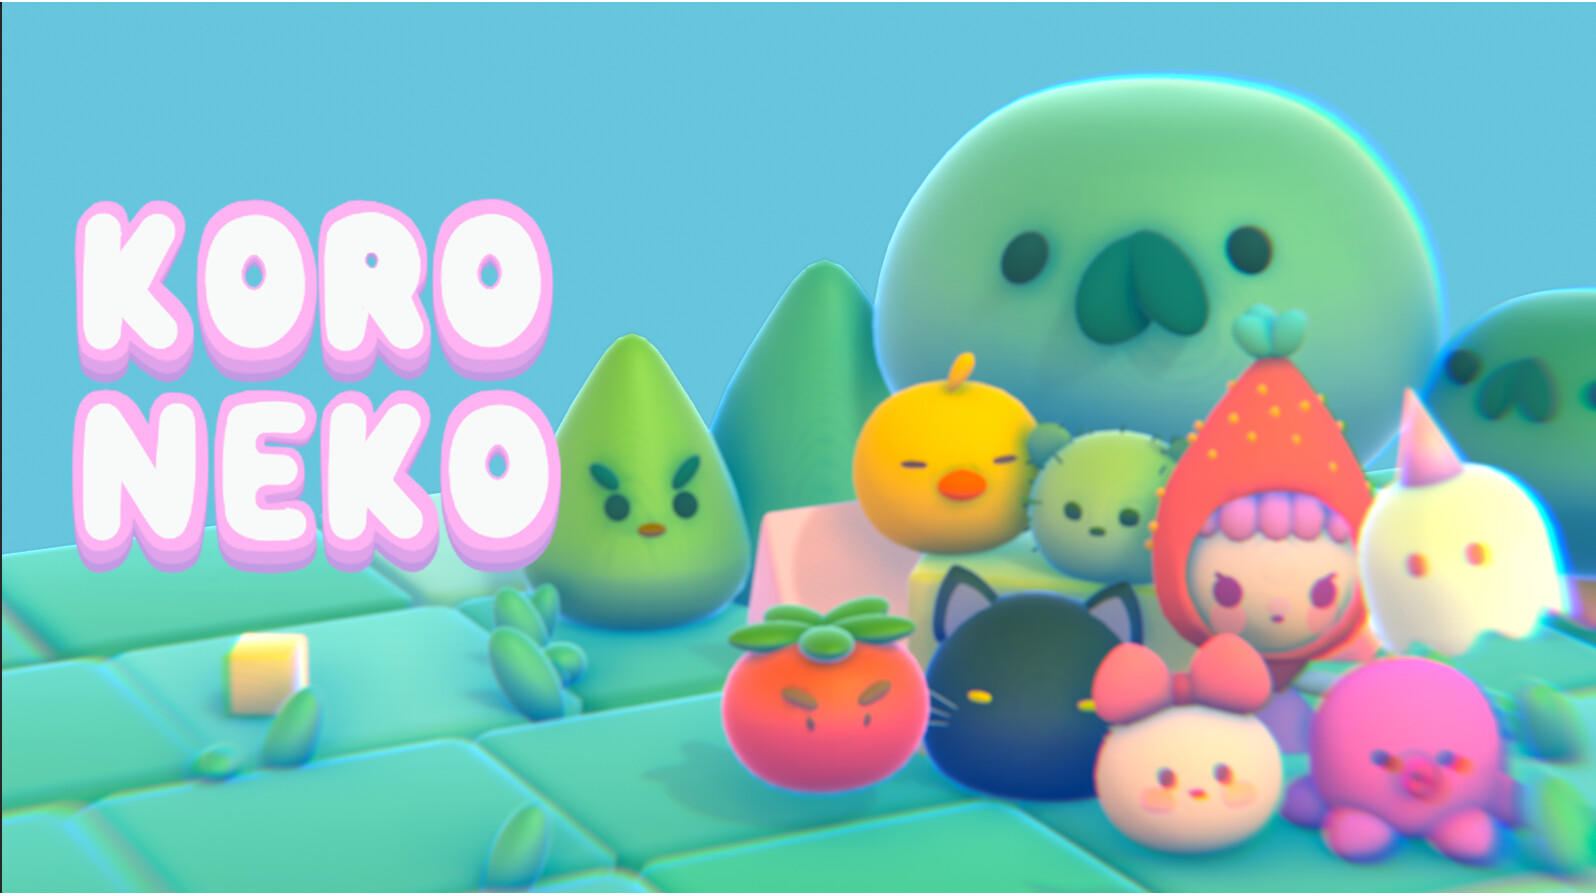 Screenshot 1 of koro-neko 